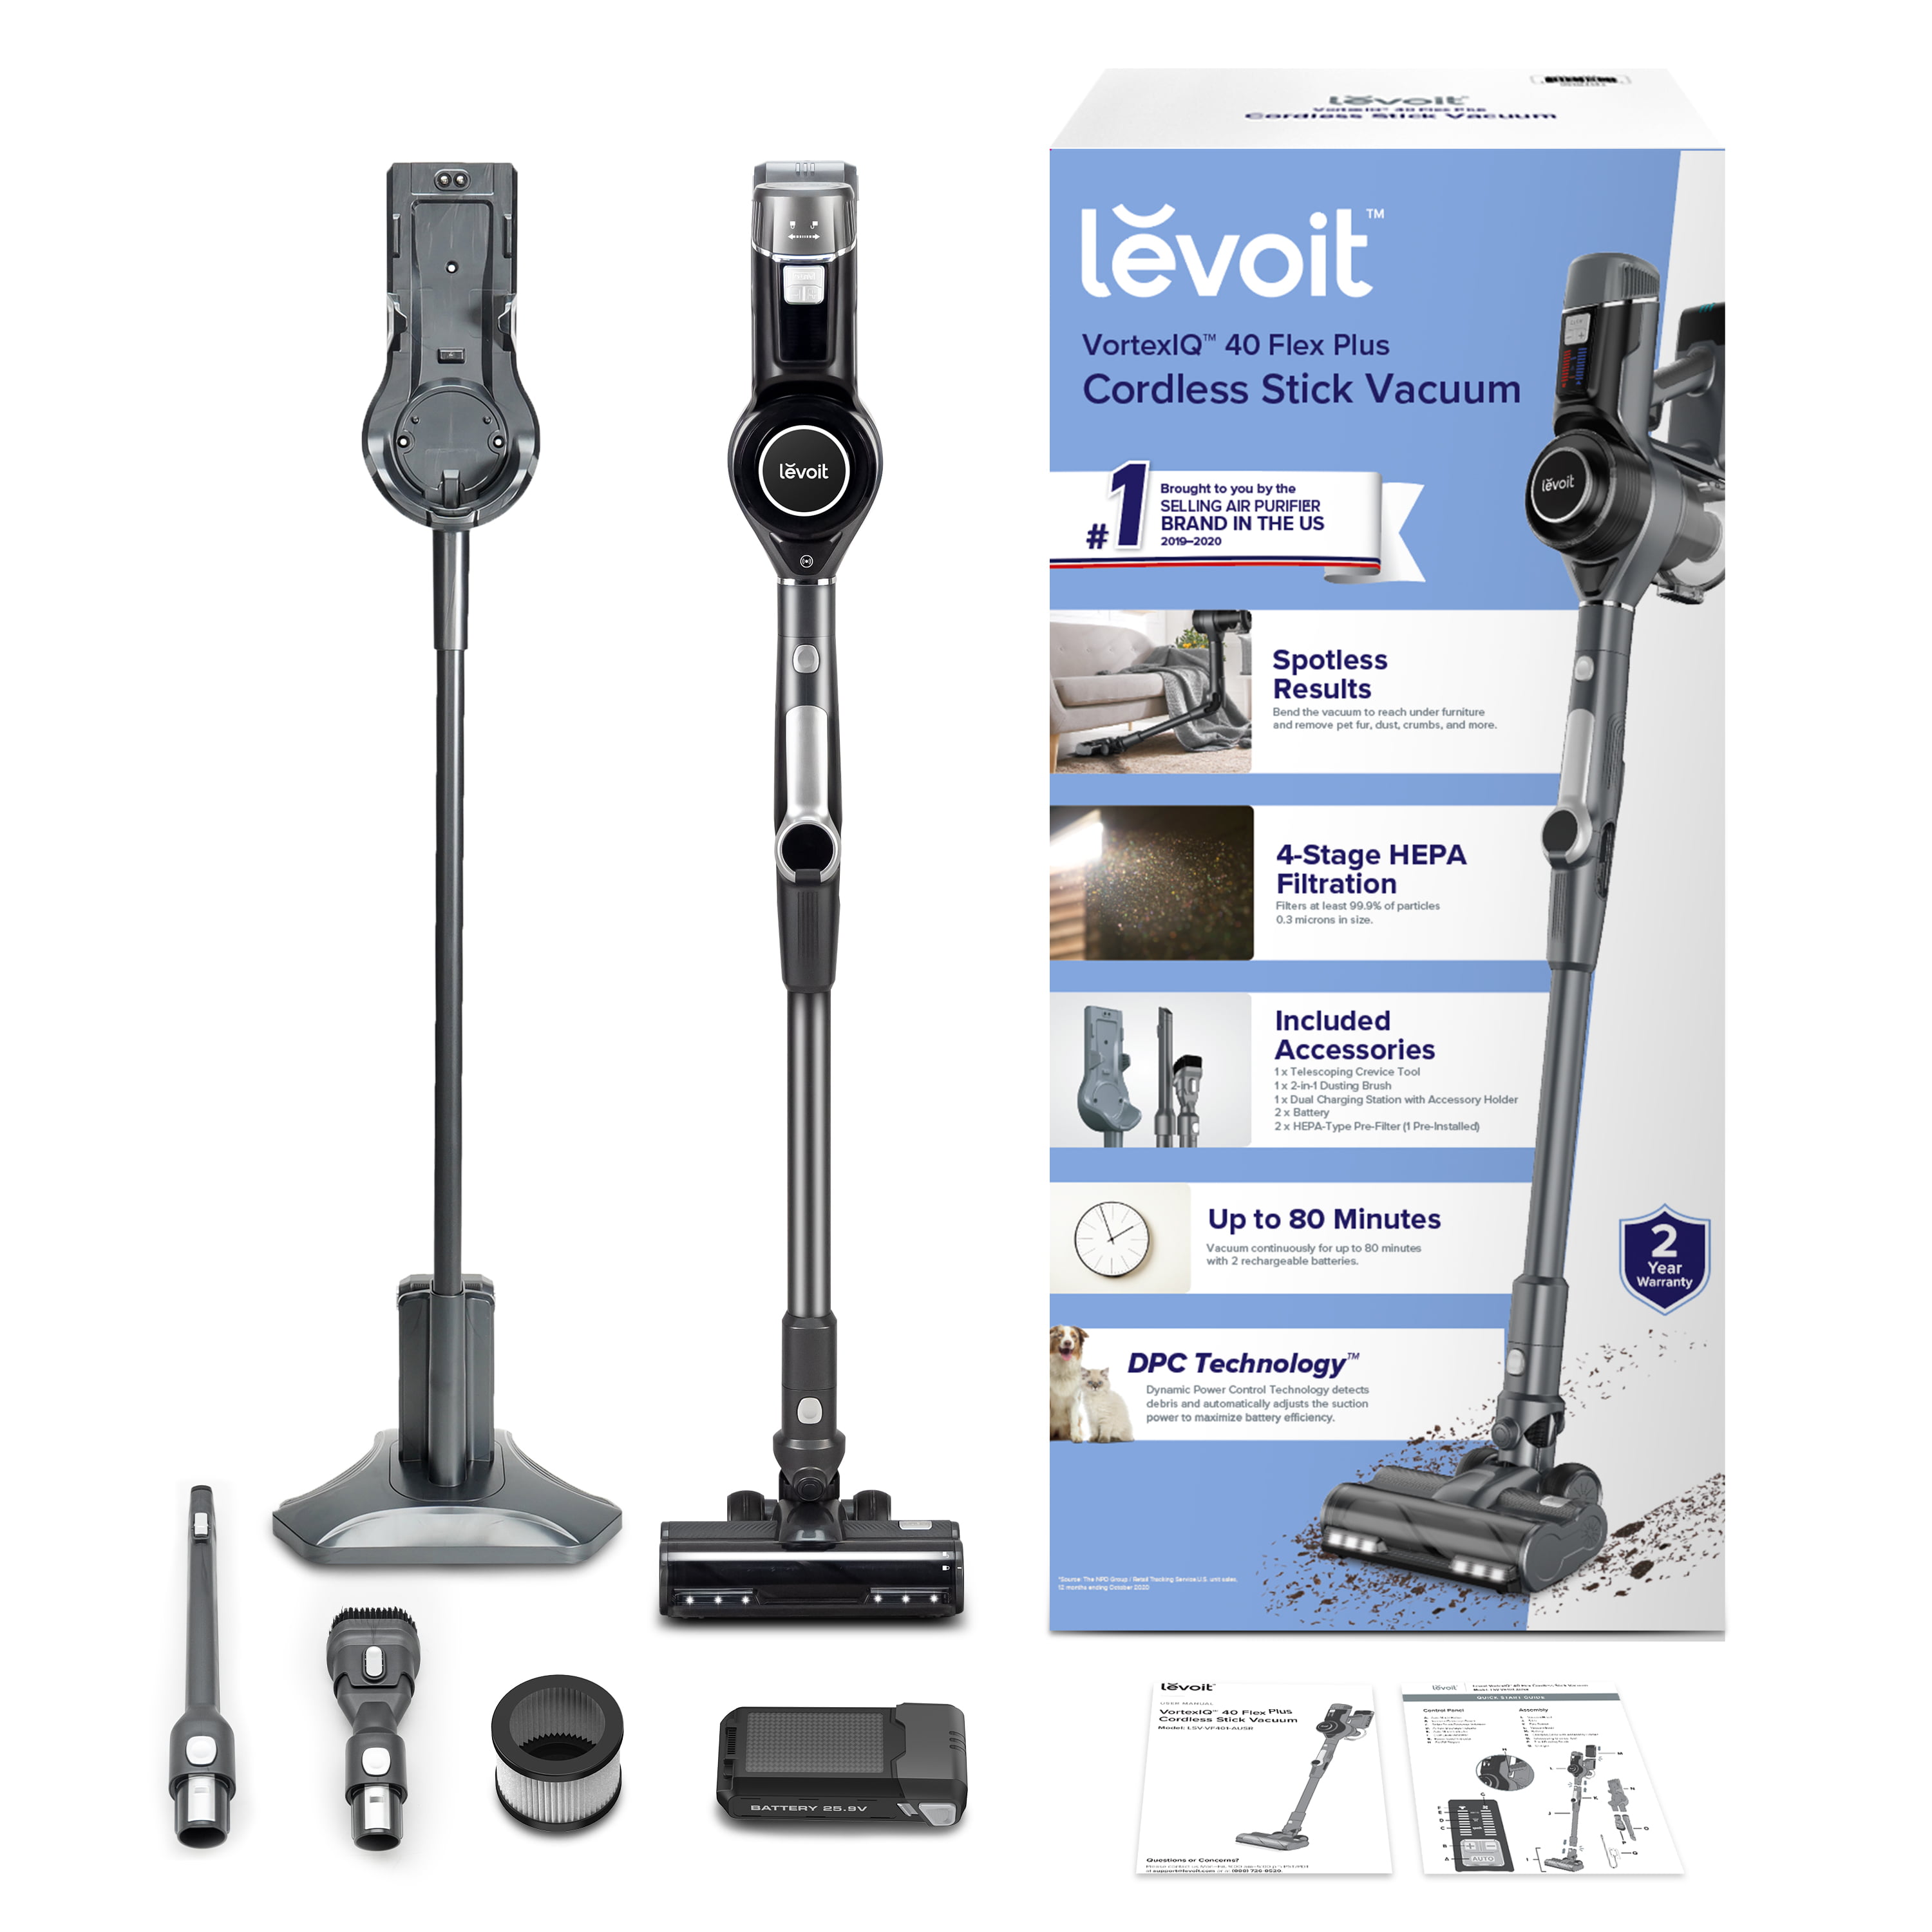 Levoit VortexIQ 40 Stick Vacuum review: simple but effective